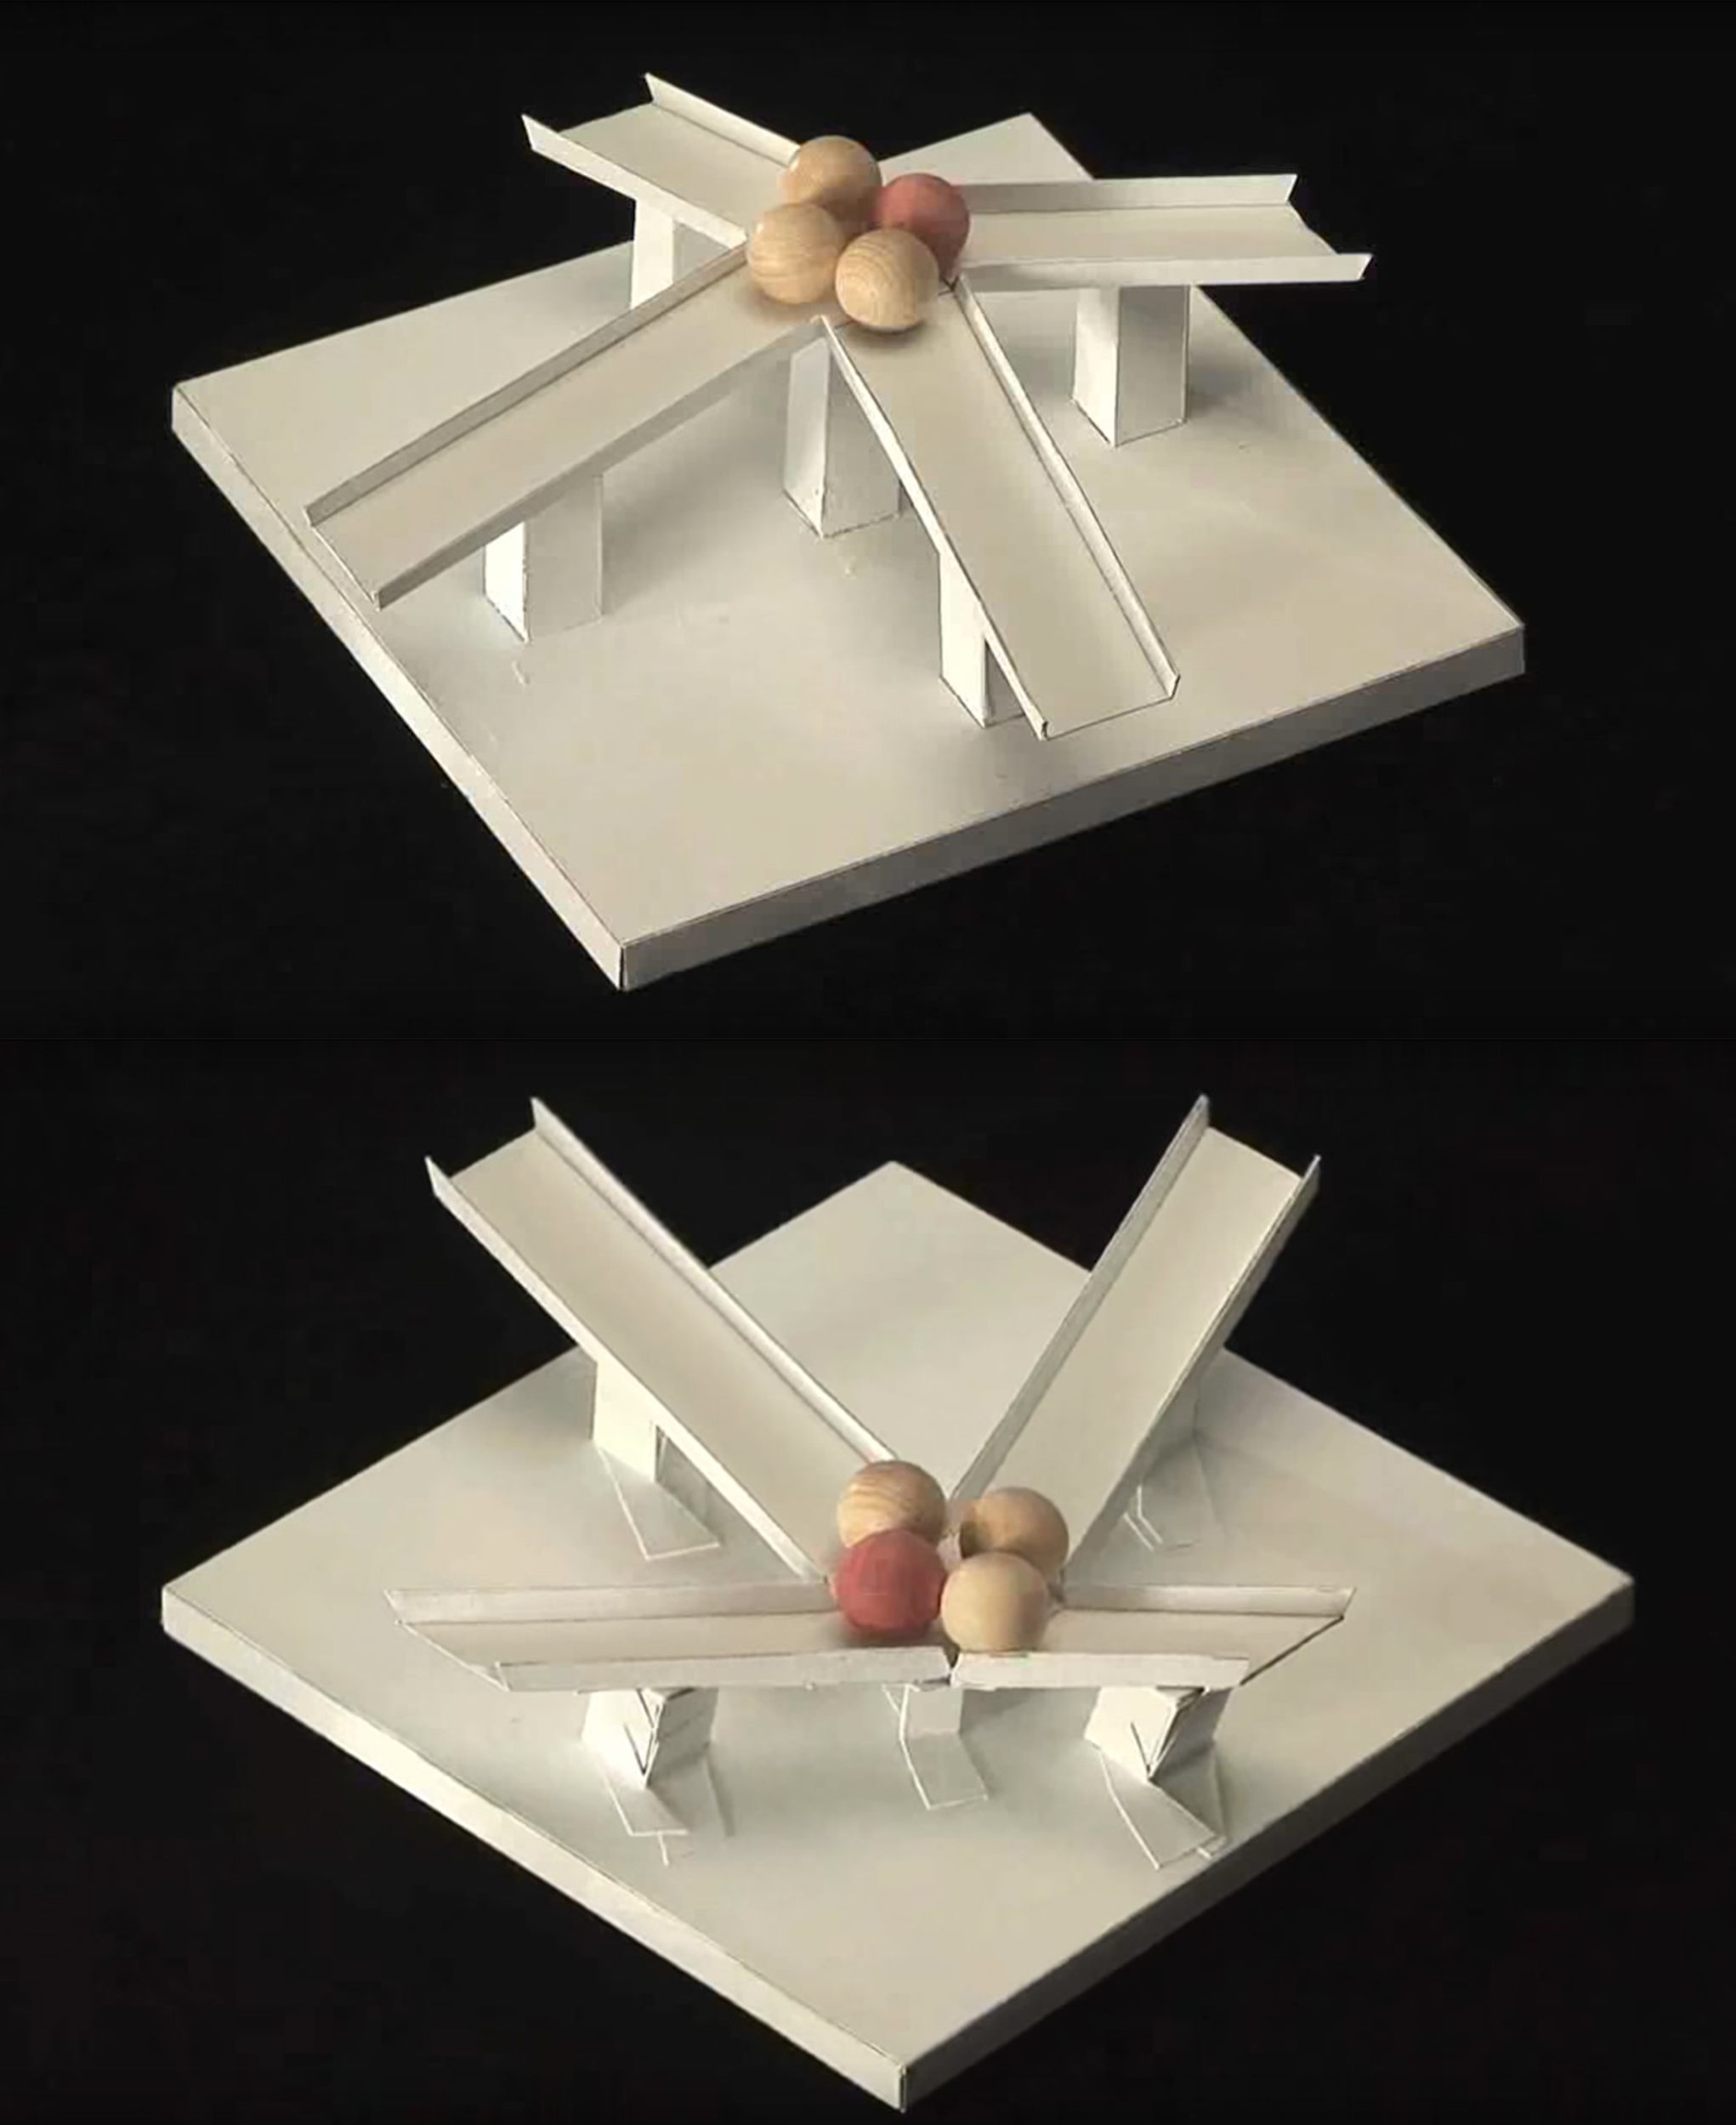 Kokichi Sugihara's 'Magnetic Slopes' illusion